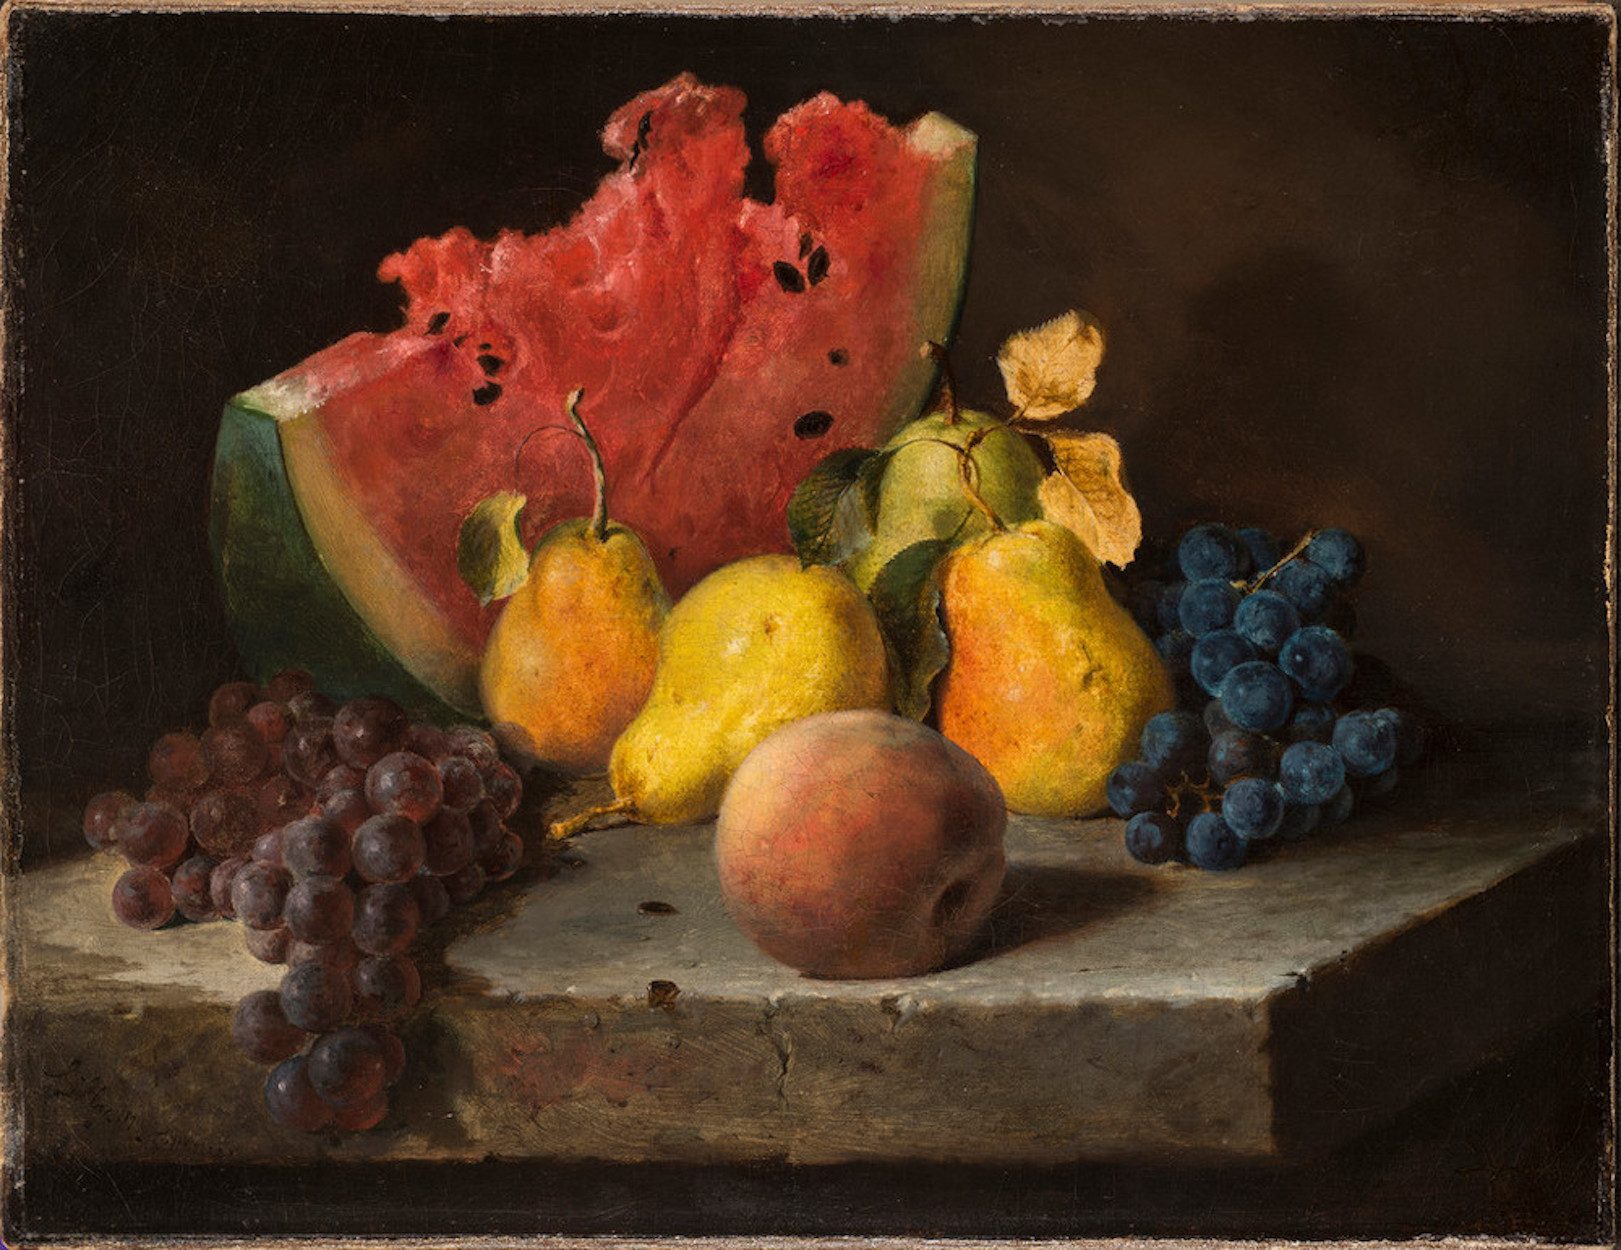 Nature morte de pastèque, poires et raisins by Lilly Martin Spencer - 1860 - 33 x 43.5 cm 